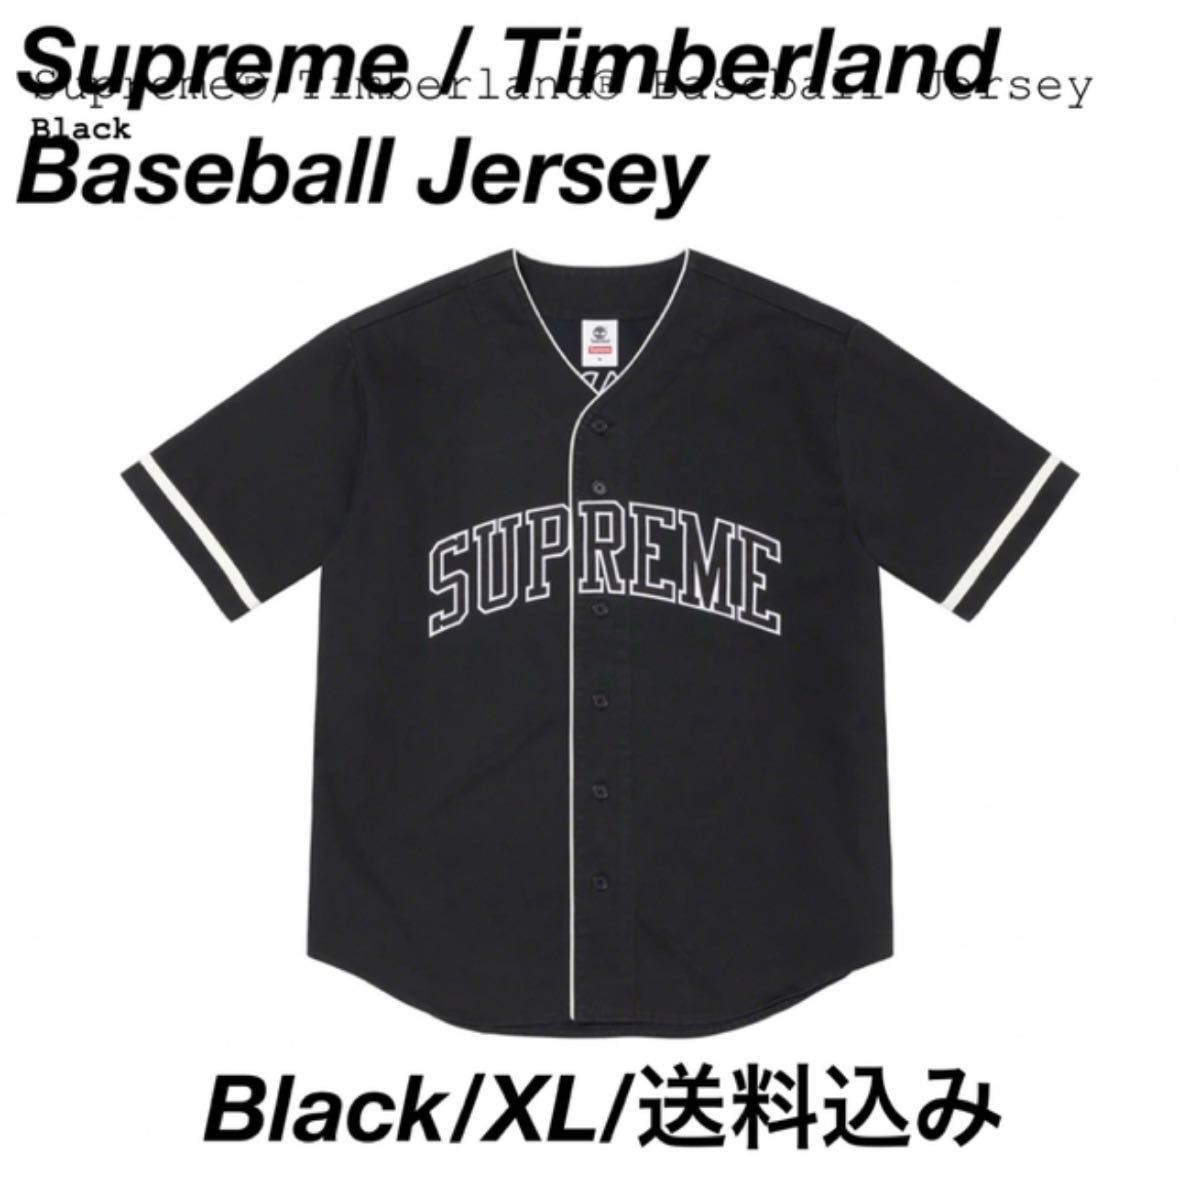 Supreme / Timberland Baseball Jersey XL